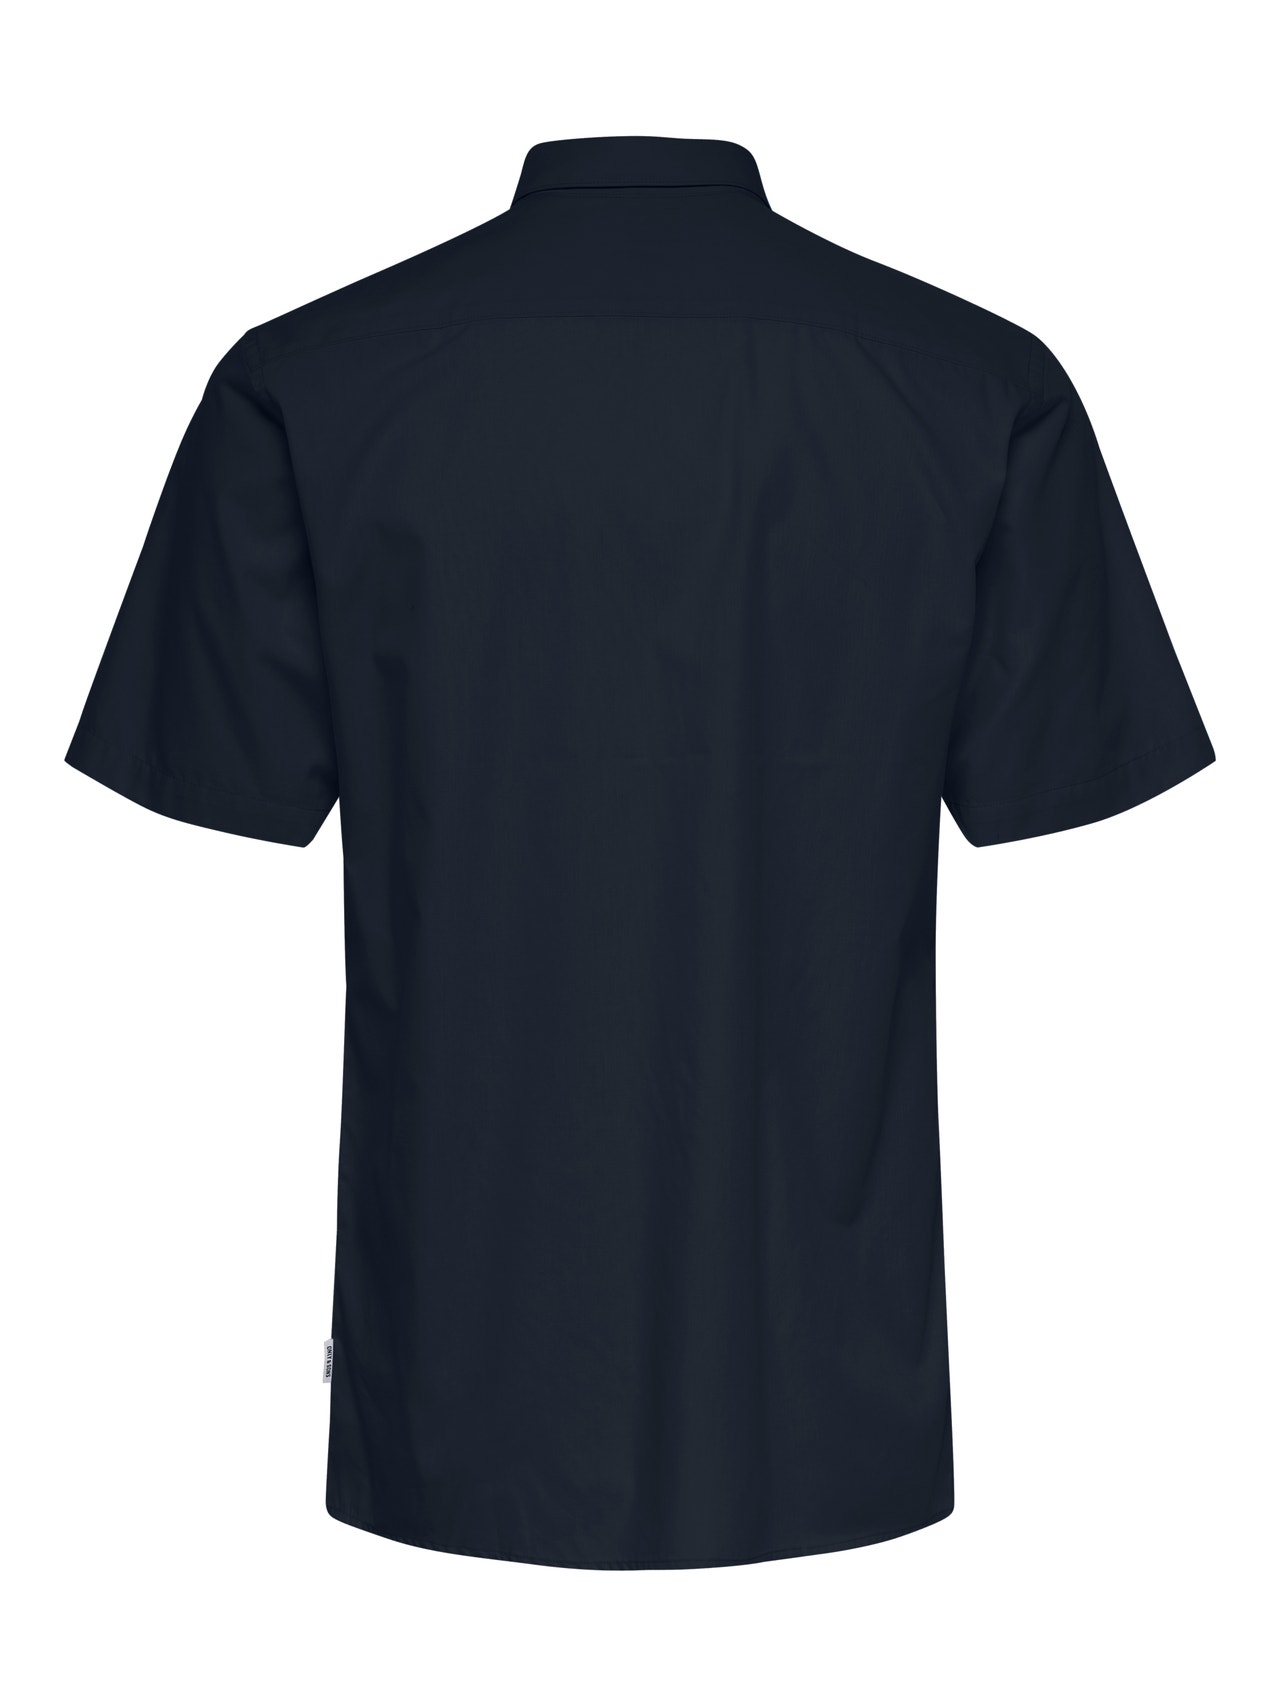 ONLY & SONS Camisas Corte slim Cuello de camisa -Dark Navy - 22015475